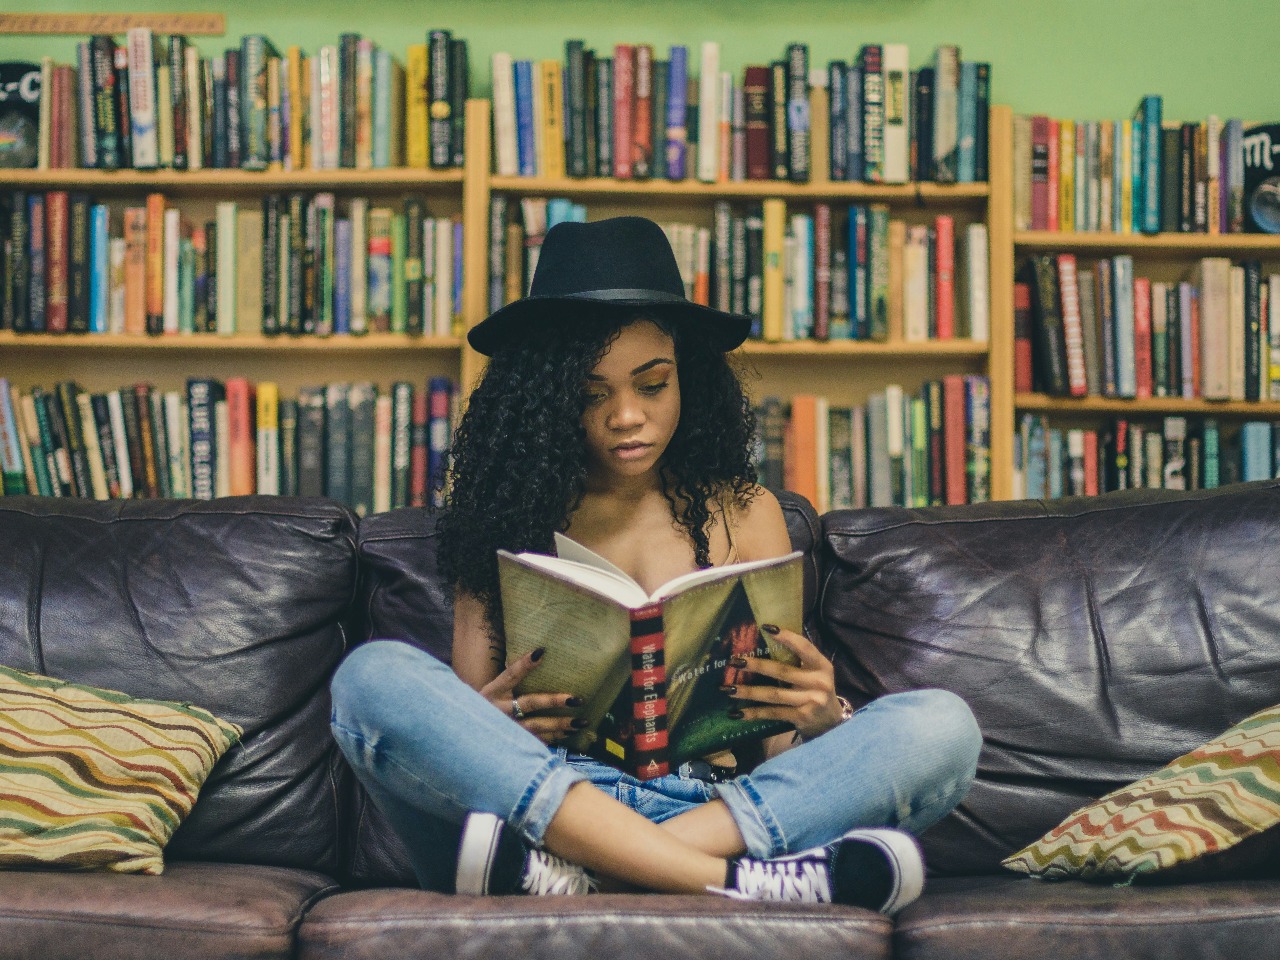 Femme assise sur un canapé en train de lire avec une bibliothèque en fond.